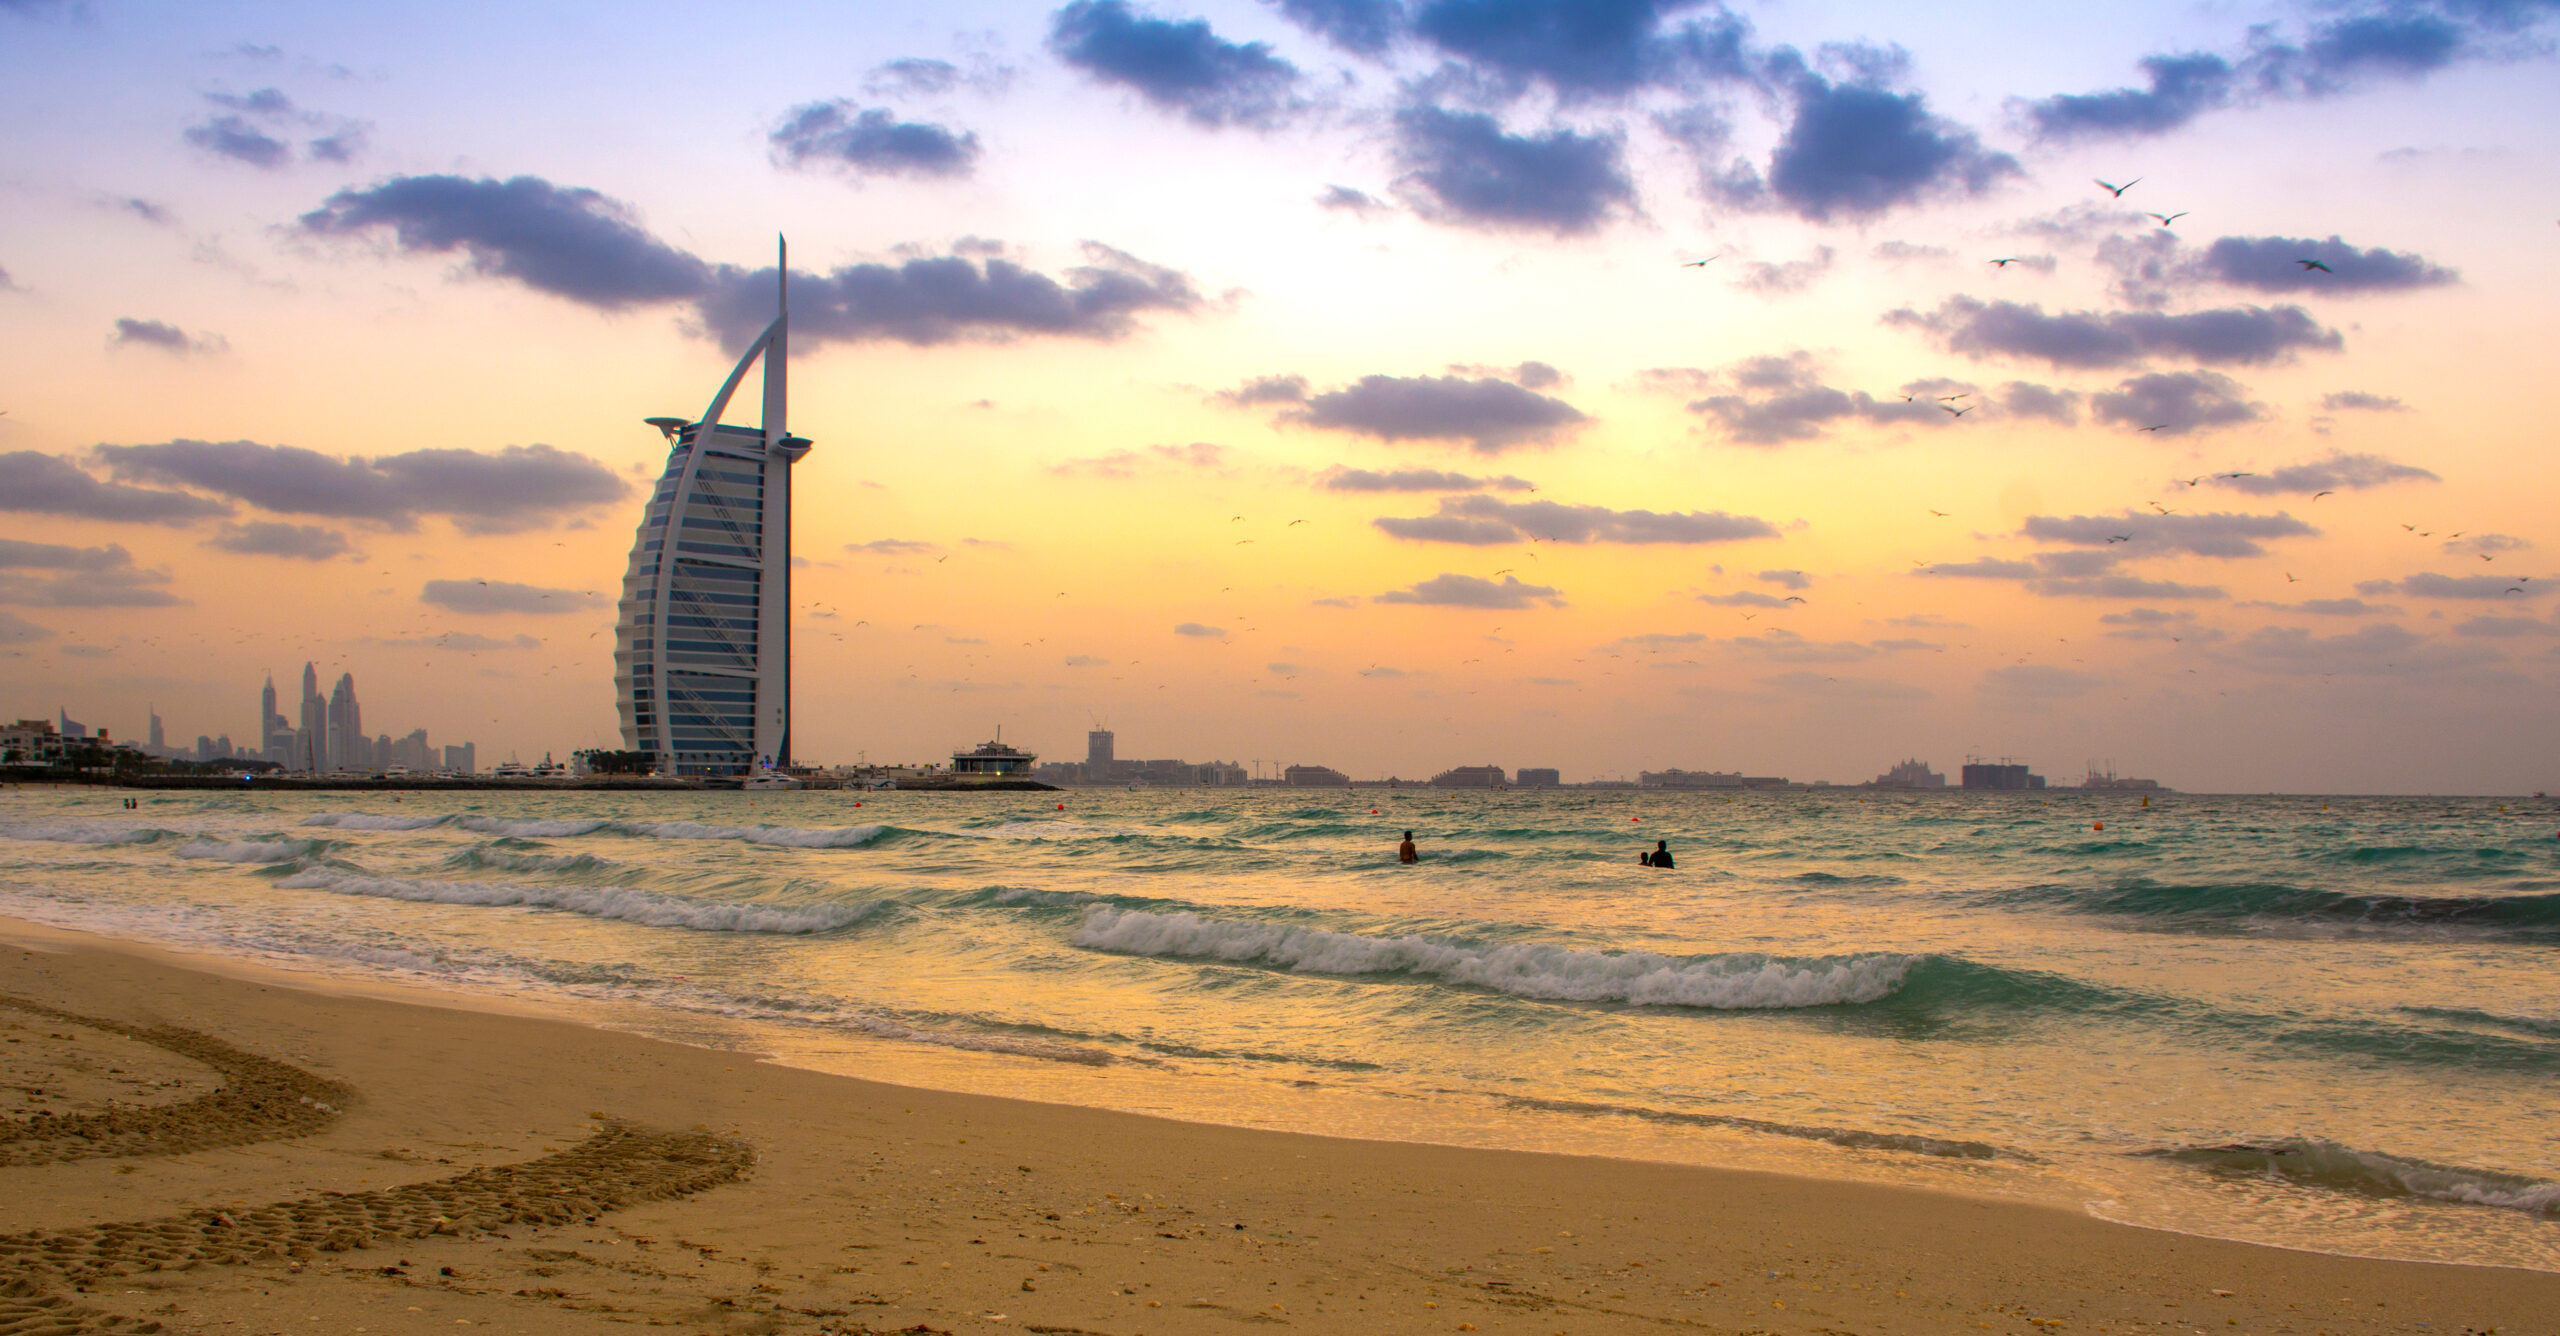 Best beaches in Dubai - Umm Suqeim Beach